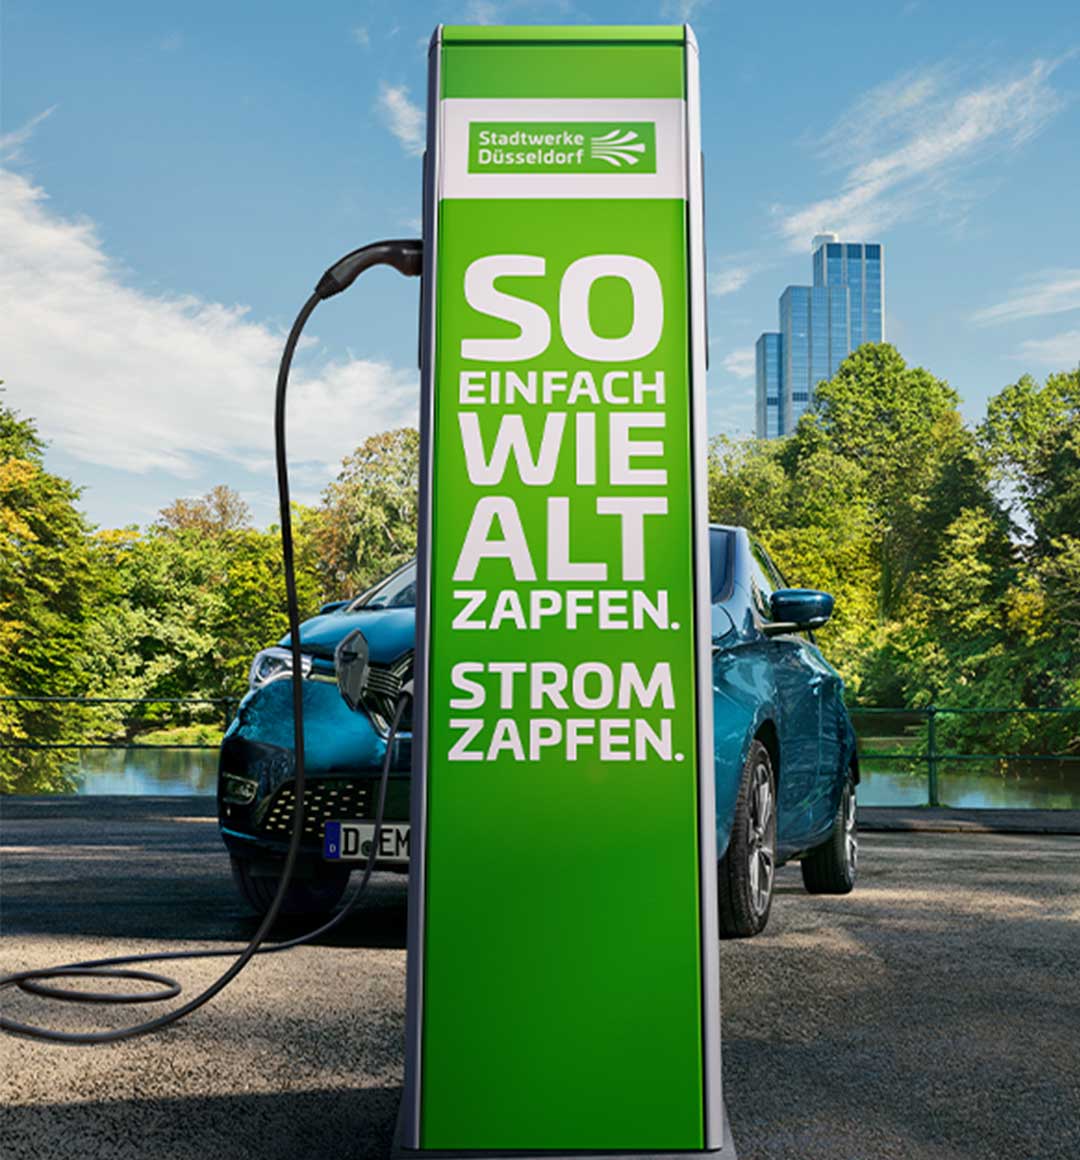 Ladesäule für E-Autos der Stadtwerke Düsseldorf: So einfach wie alt zapfen. Strom zapfen.